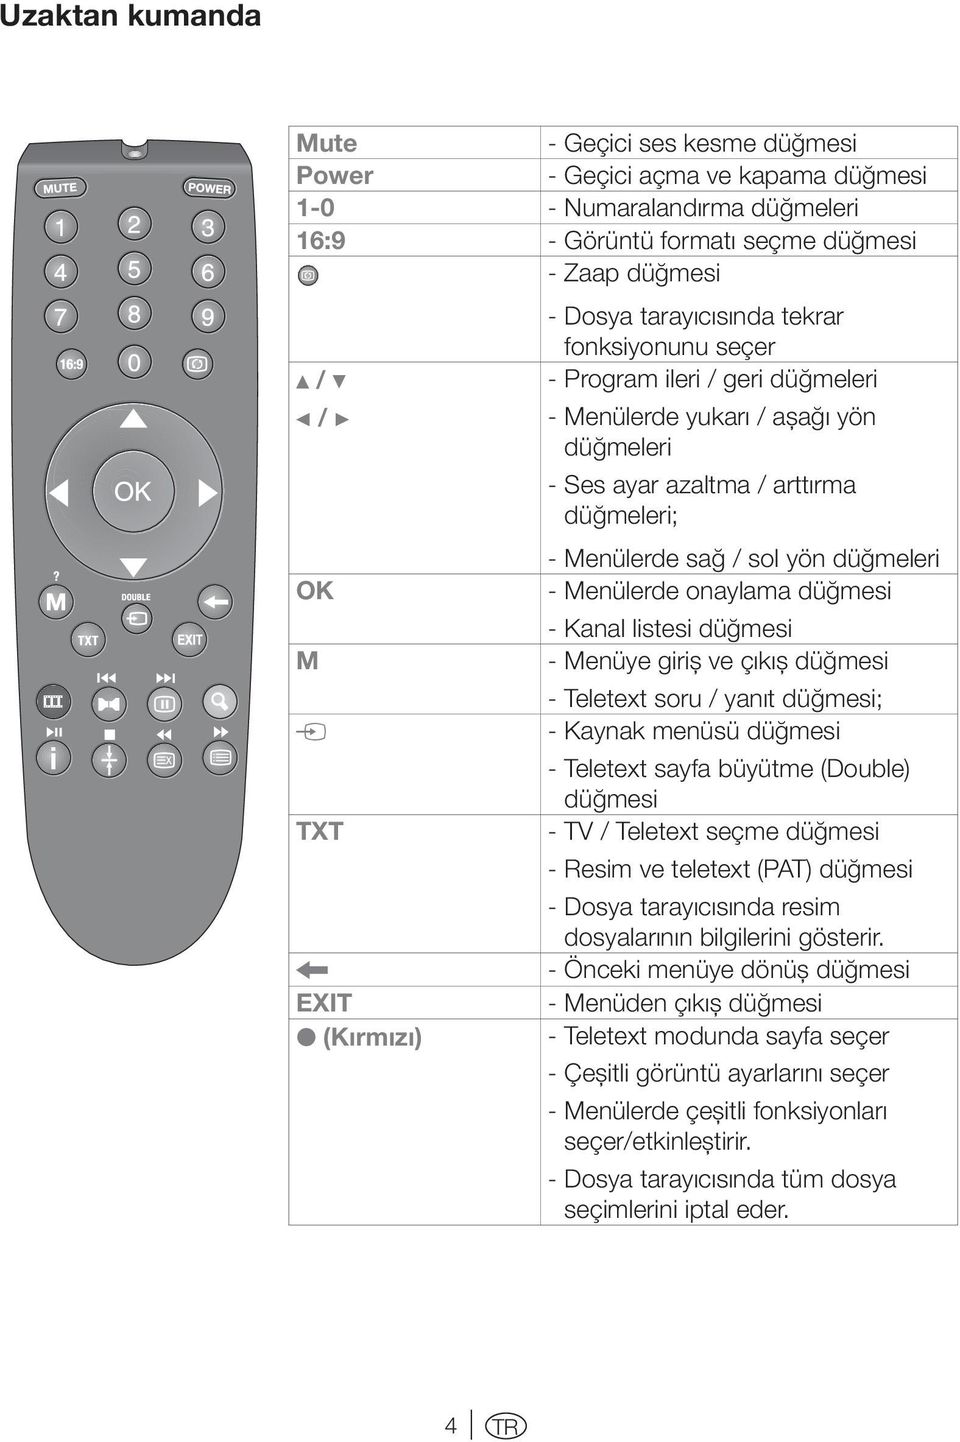 düğmeleri - Menülerde onaylama düğmesi - Kanal listesi düğmesi - Menüye giriş ve çıkış düğmesi - Teletext soru / yanıt düğmesi; - Kaynak menüsü düğmesi - Teletext sayfa büyütme (Double) düğmesi - TV